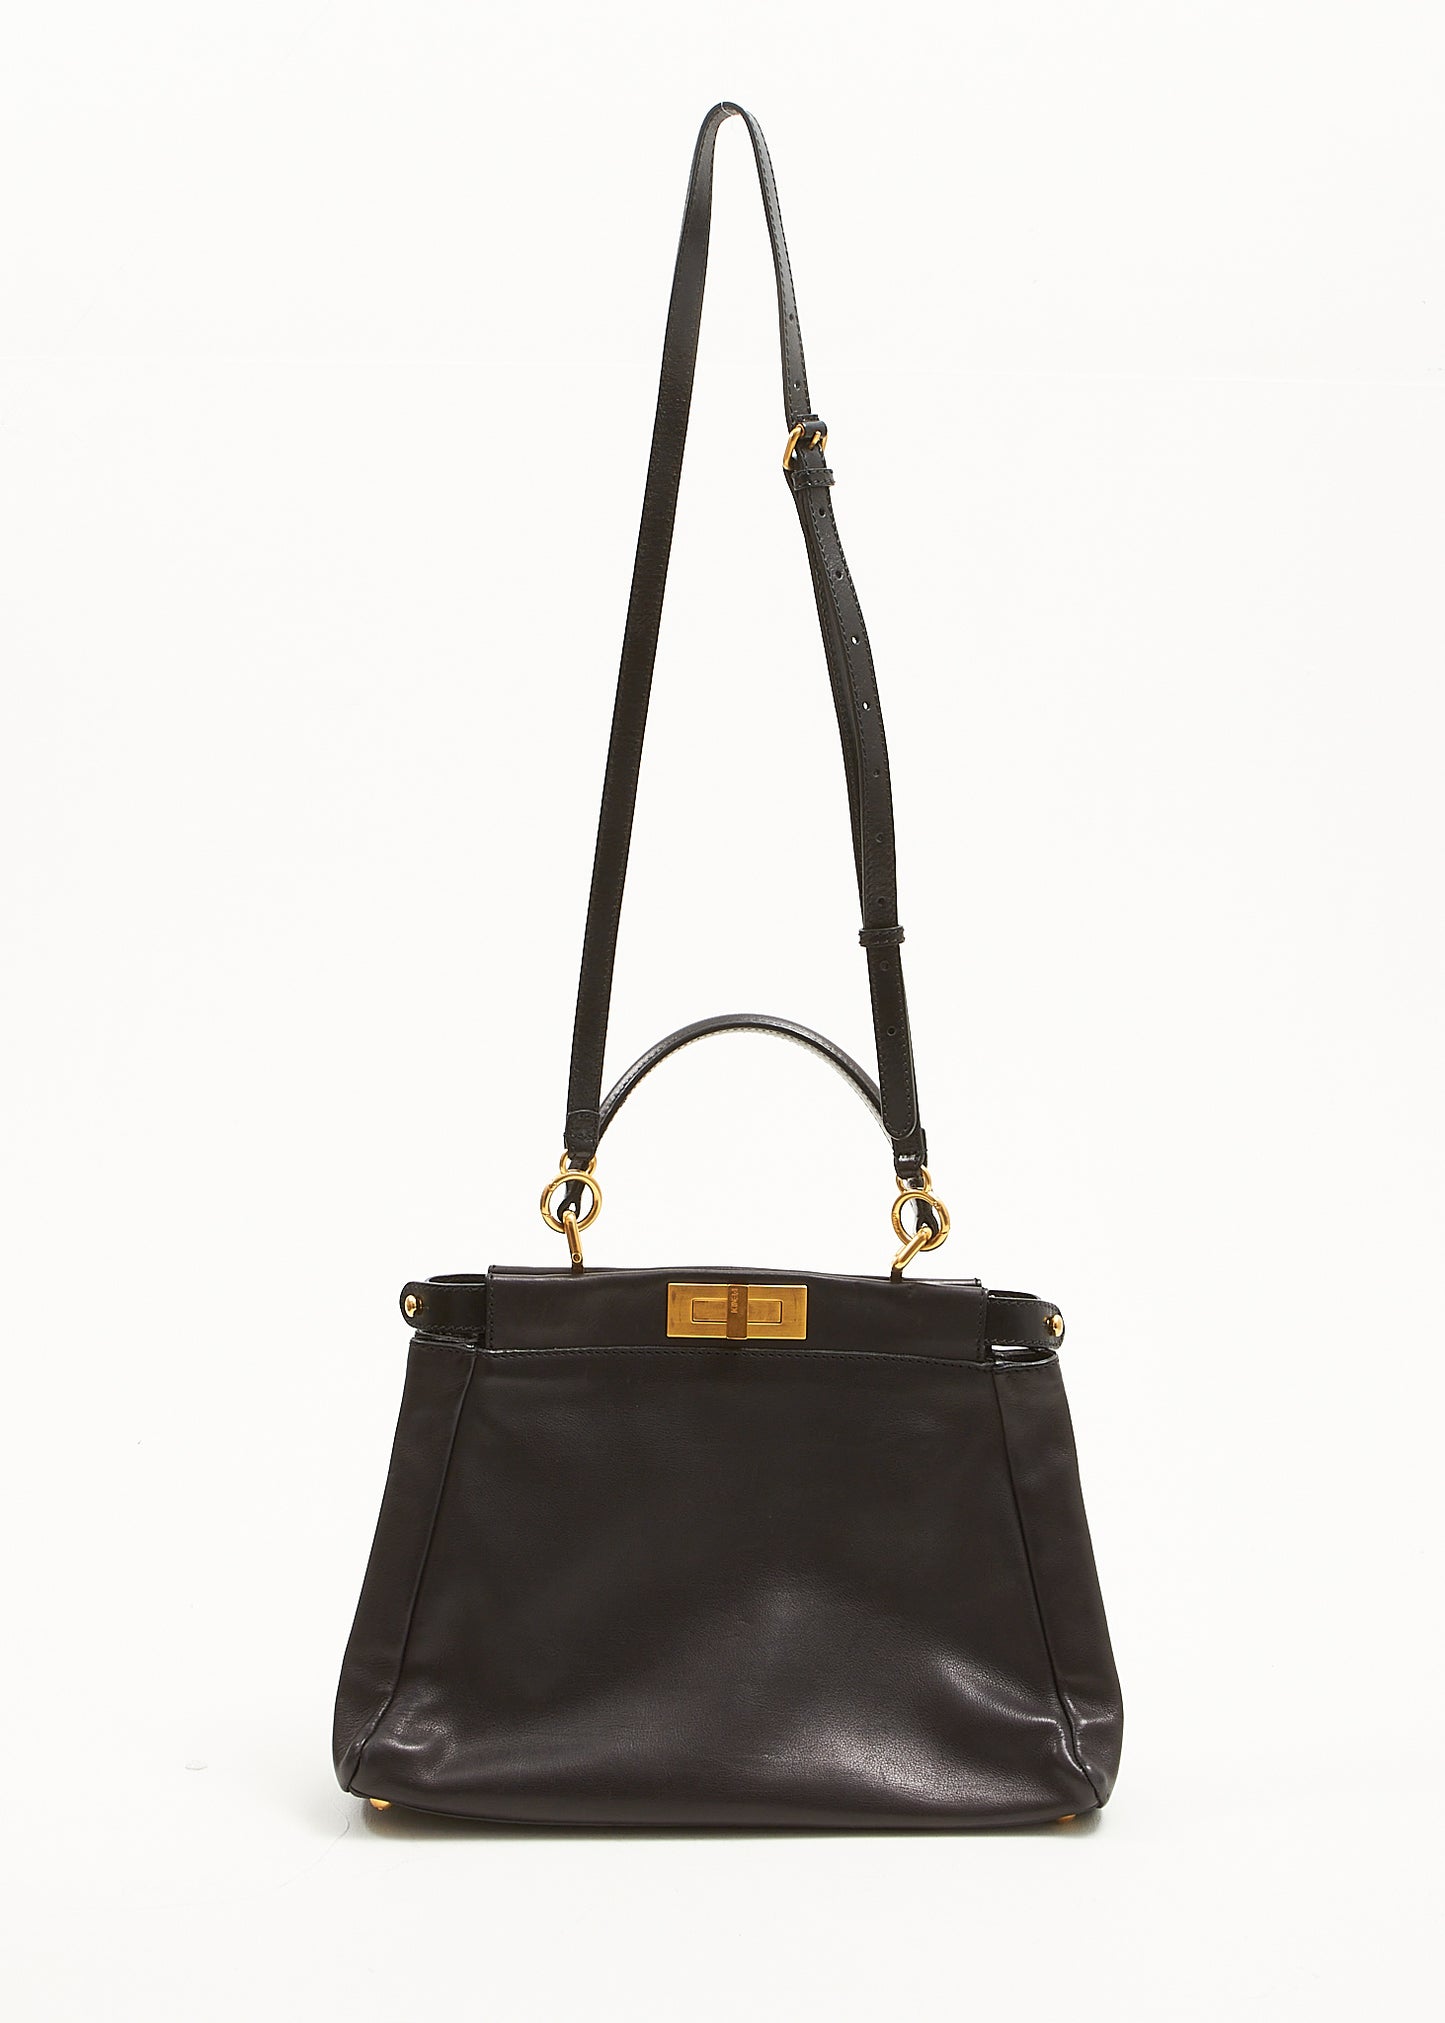 Fendi Black Leather Medium Peekaboo Bag